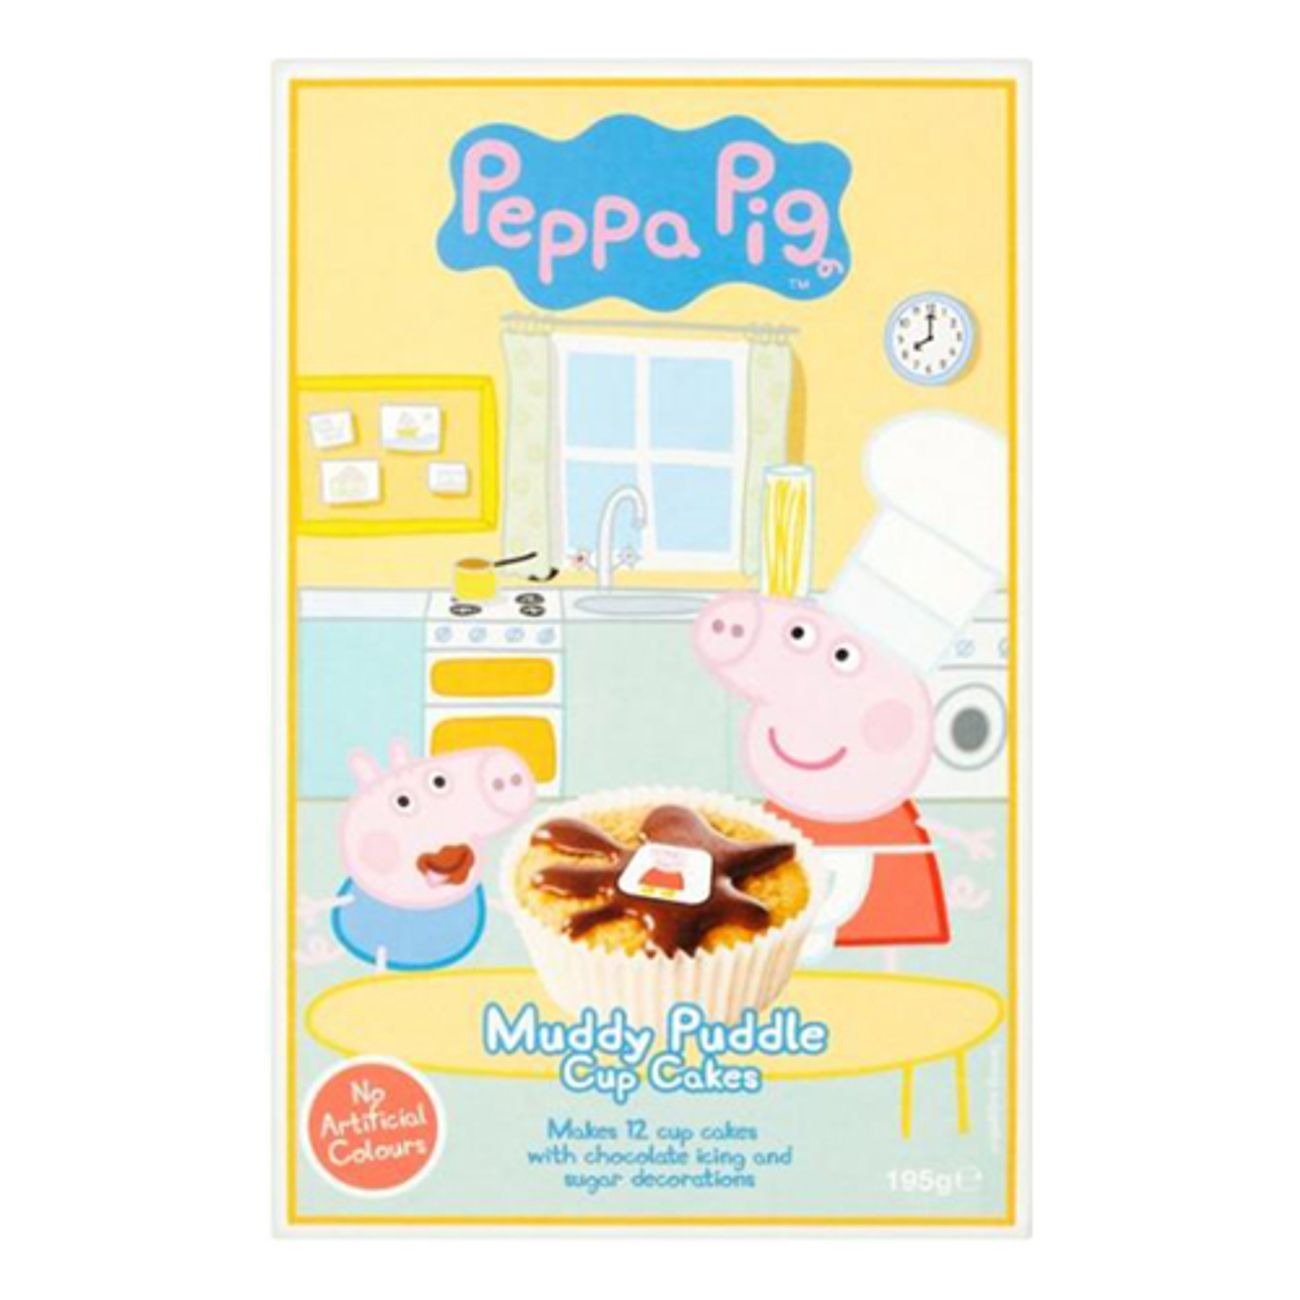 peppa-pig-muddy-puddle-cupcake-mix-1